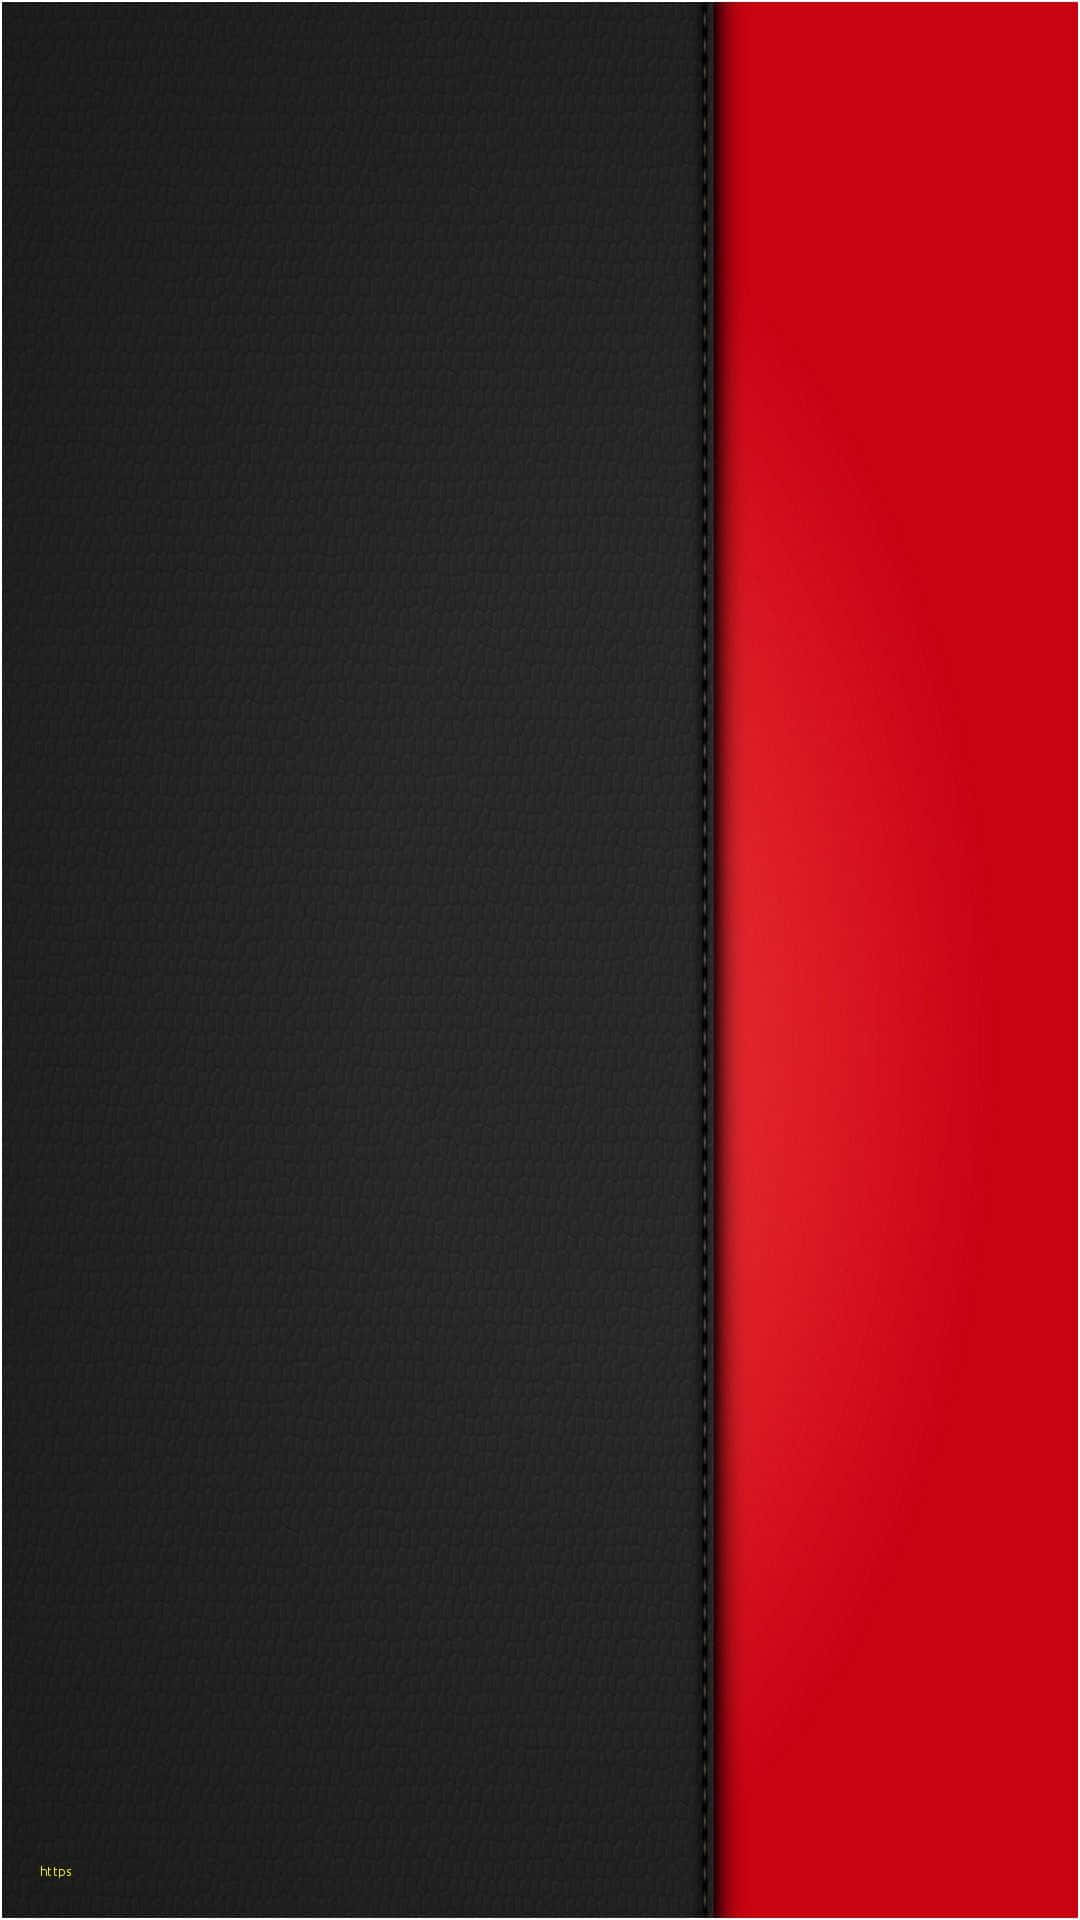 Zeigensie Ihren Stil Mit Dem Neuen Schwarzen Roten Iphone. Wallpaper